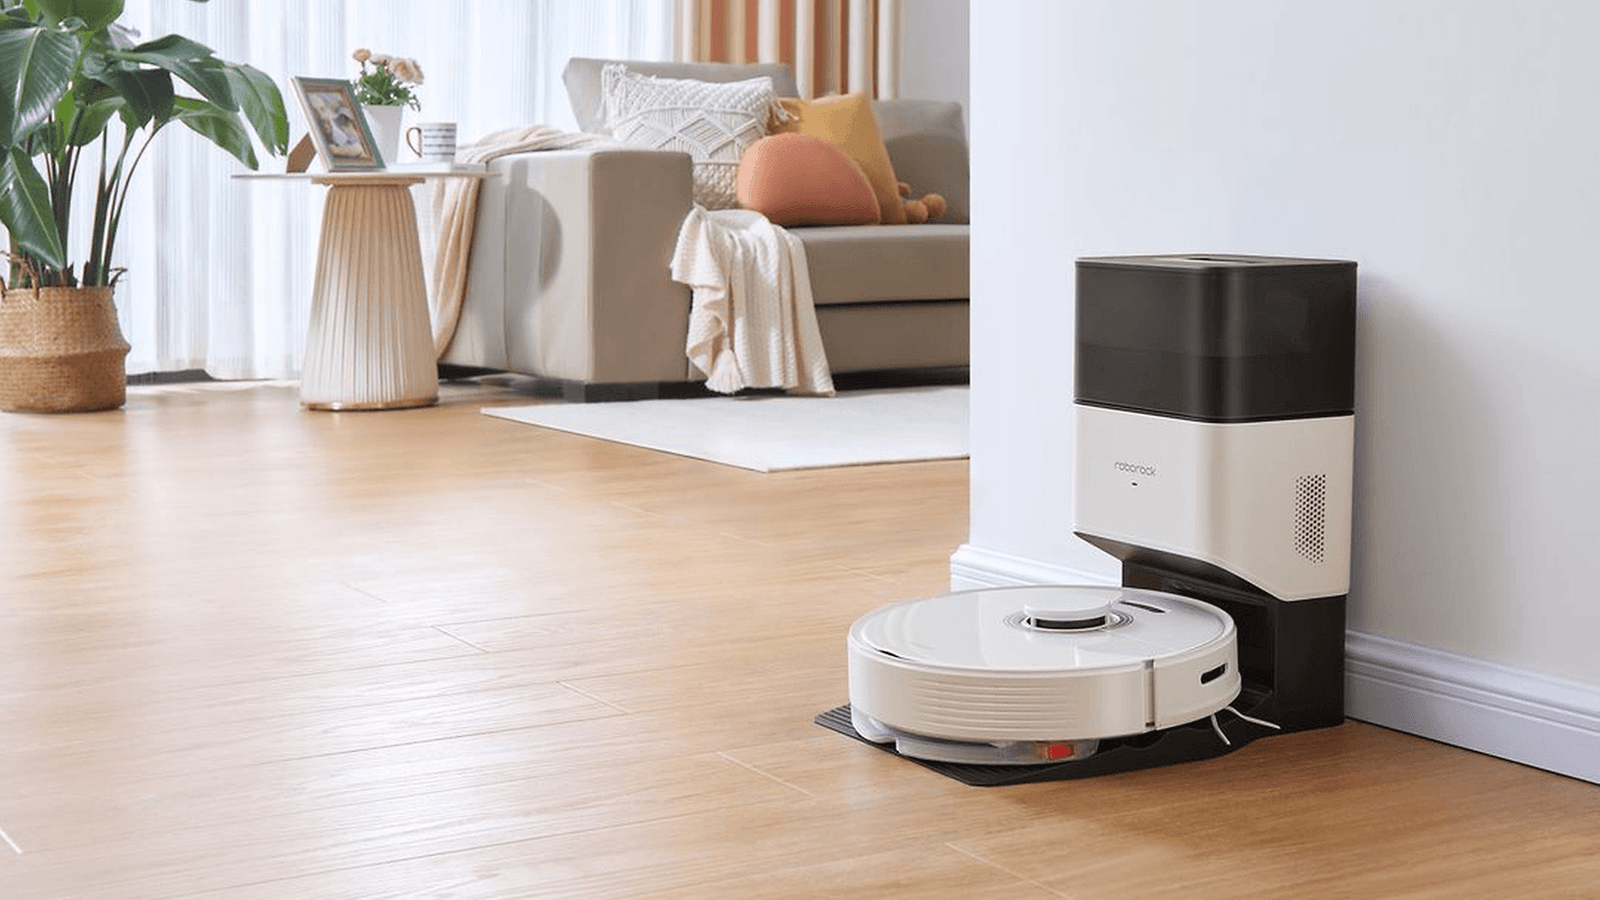 Roborock Q7 Max+: New robot vacuum announced with LiDAR navigation